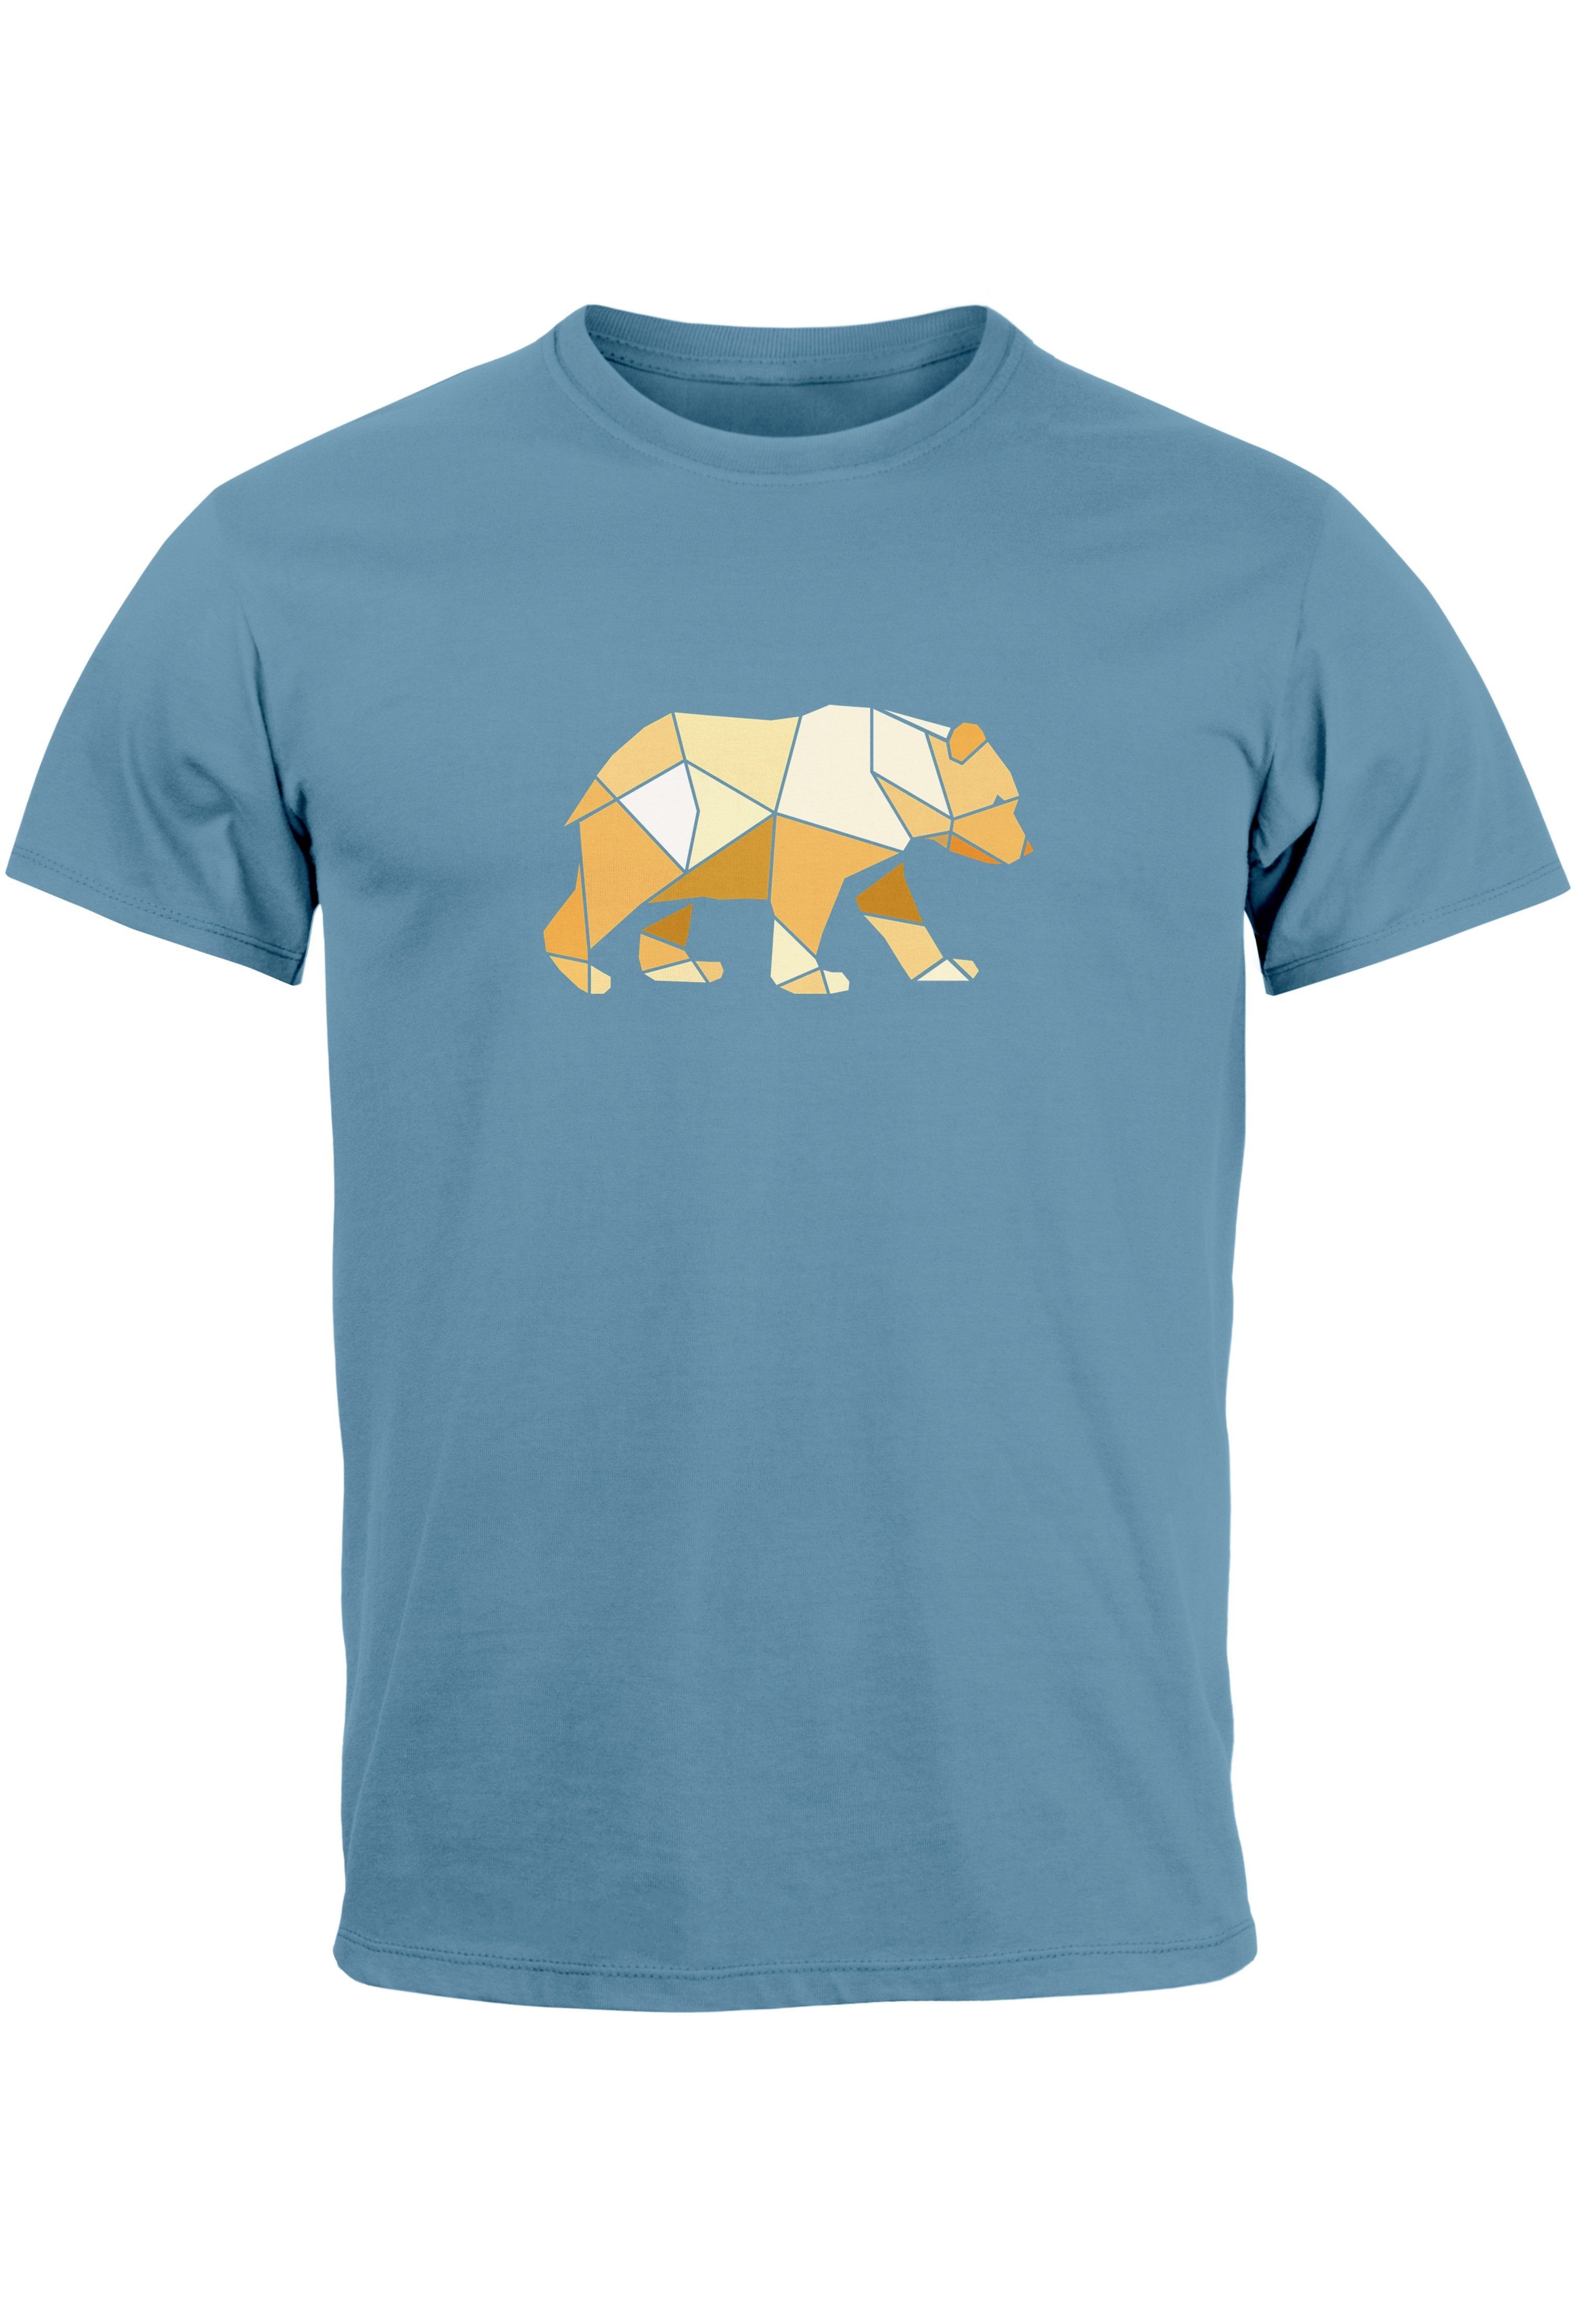 N Printshirt Outdoor Print-Shirt Print Polygon mit Grafik Herren T-Shirt Neverless stone Bär Aufdruck Motive blue